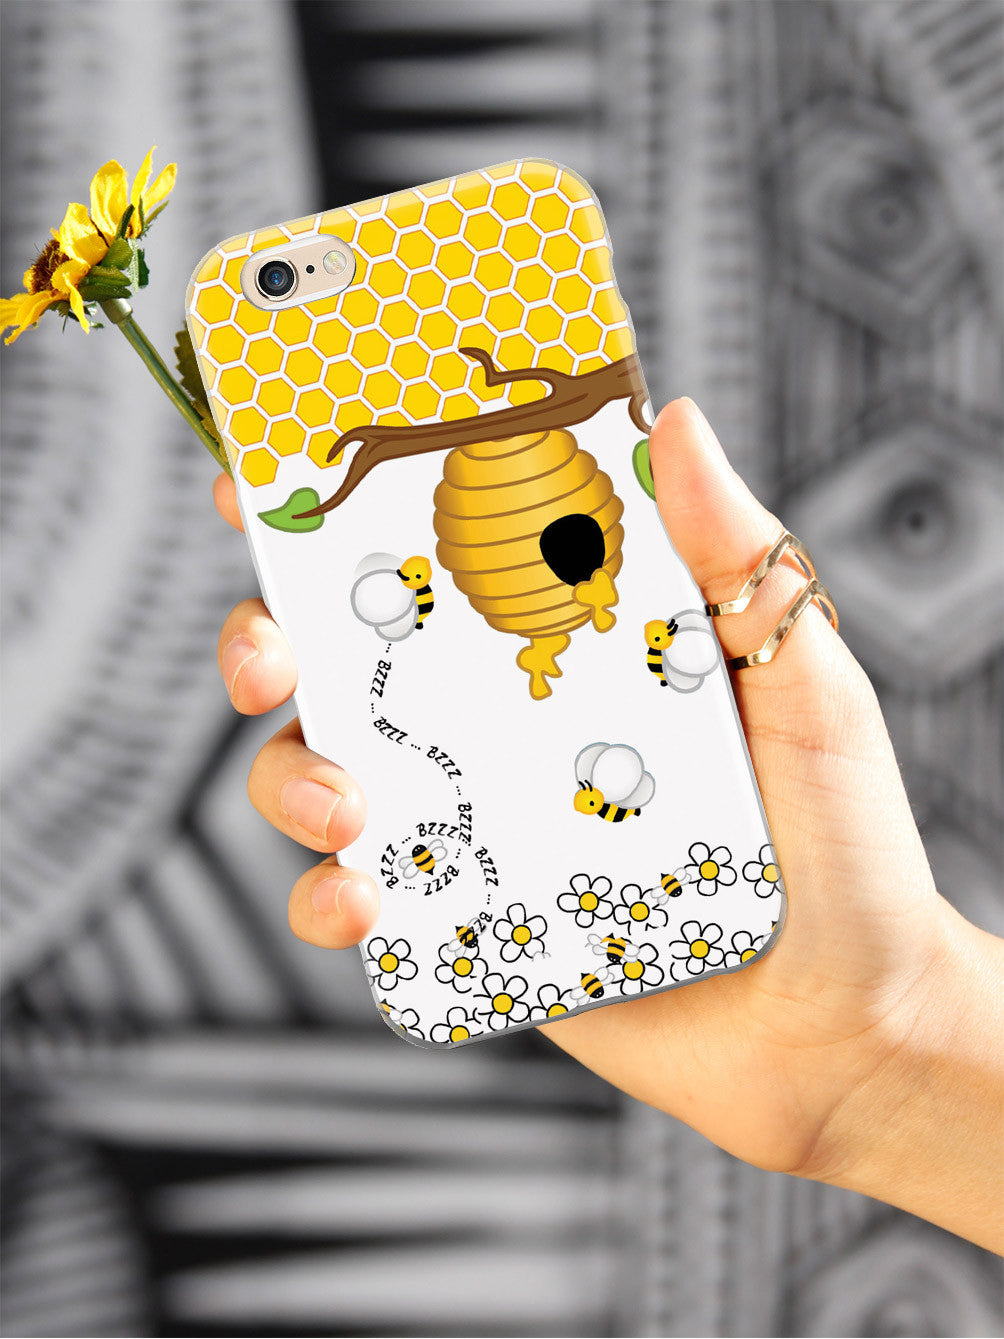 Honey Bee Case